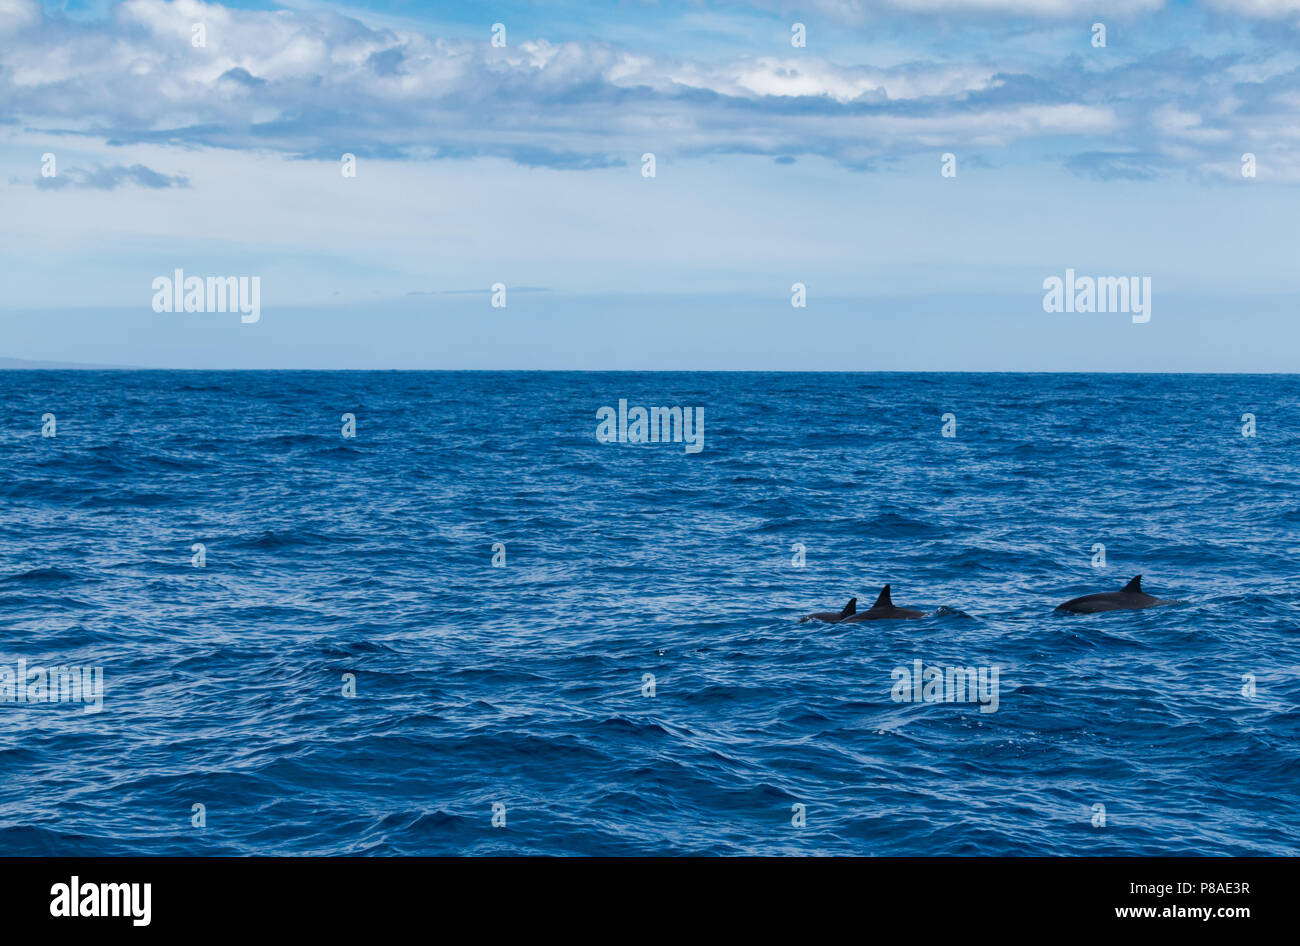 Wild Hawaiian Spinner delfini Stenella longirostris, nuotano liberamente al largo della costa della Lana'i. Foto Stock